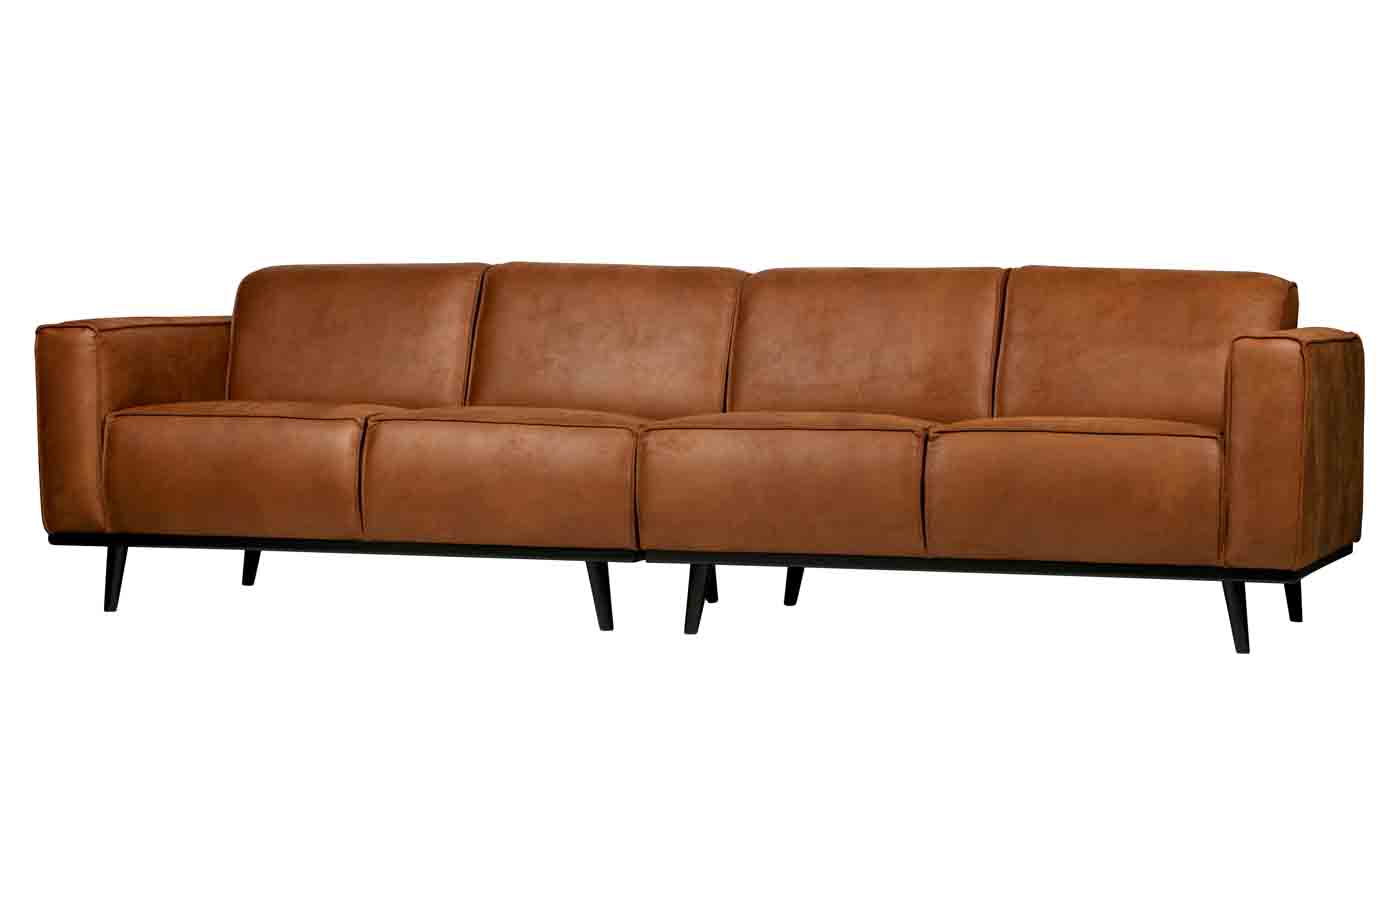 Bigsofa Statement aus hochwertigem recyceltem Leder und Federkernpolsterung für einen hohen Sitzkomfort